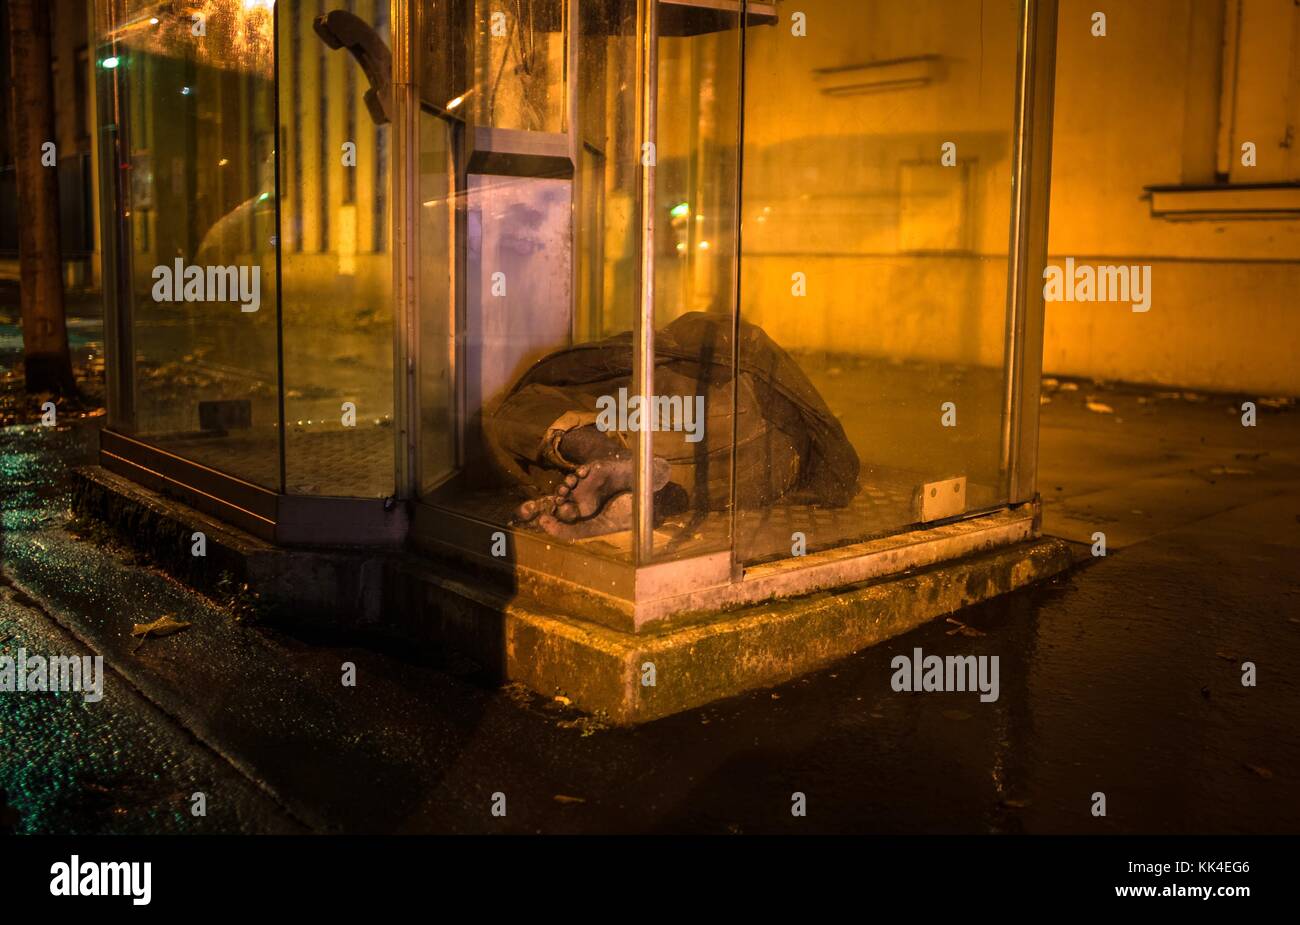 Pauvreté urbaine - 28/11/2012 - - Jimmy a passé une grande partie de sa vie dans ce service de cabine, complètement impuissante. - Sylvain Leser / le Pictorium Banque D'Images